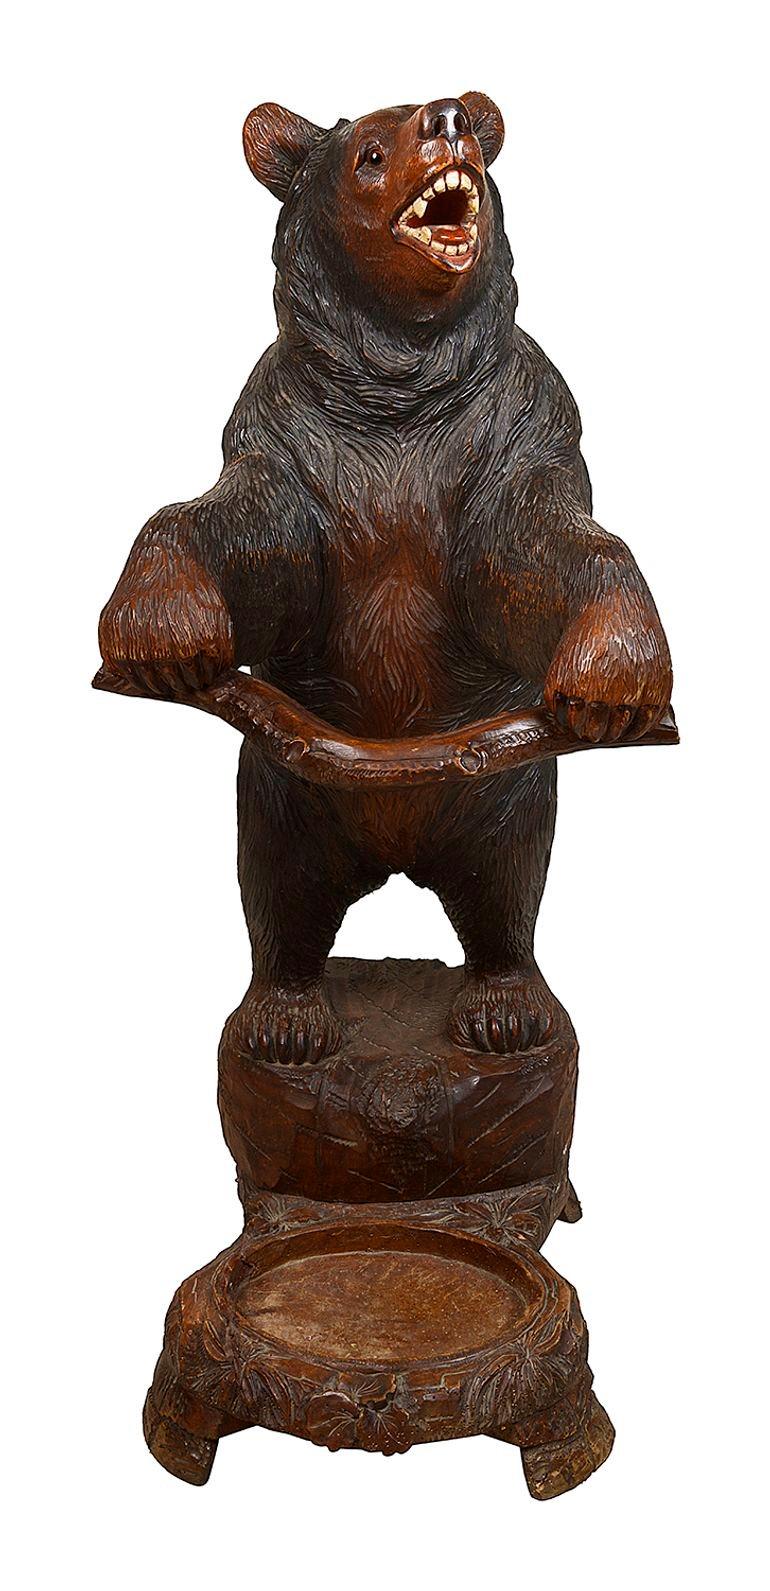 Un support de salle de bonne qualité de la fin du 19e siècle en bois sculpté représentant un ours de la forêt noire. L'ours debout sur ses pattes arrière tenant une branche pour tenir les bâtons de marche.

Lot 76 DNYKK. 62401
